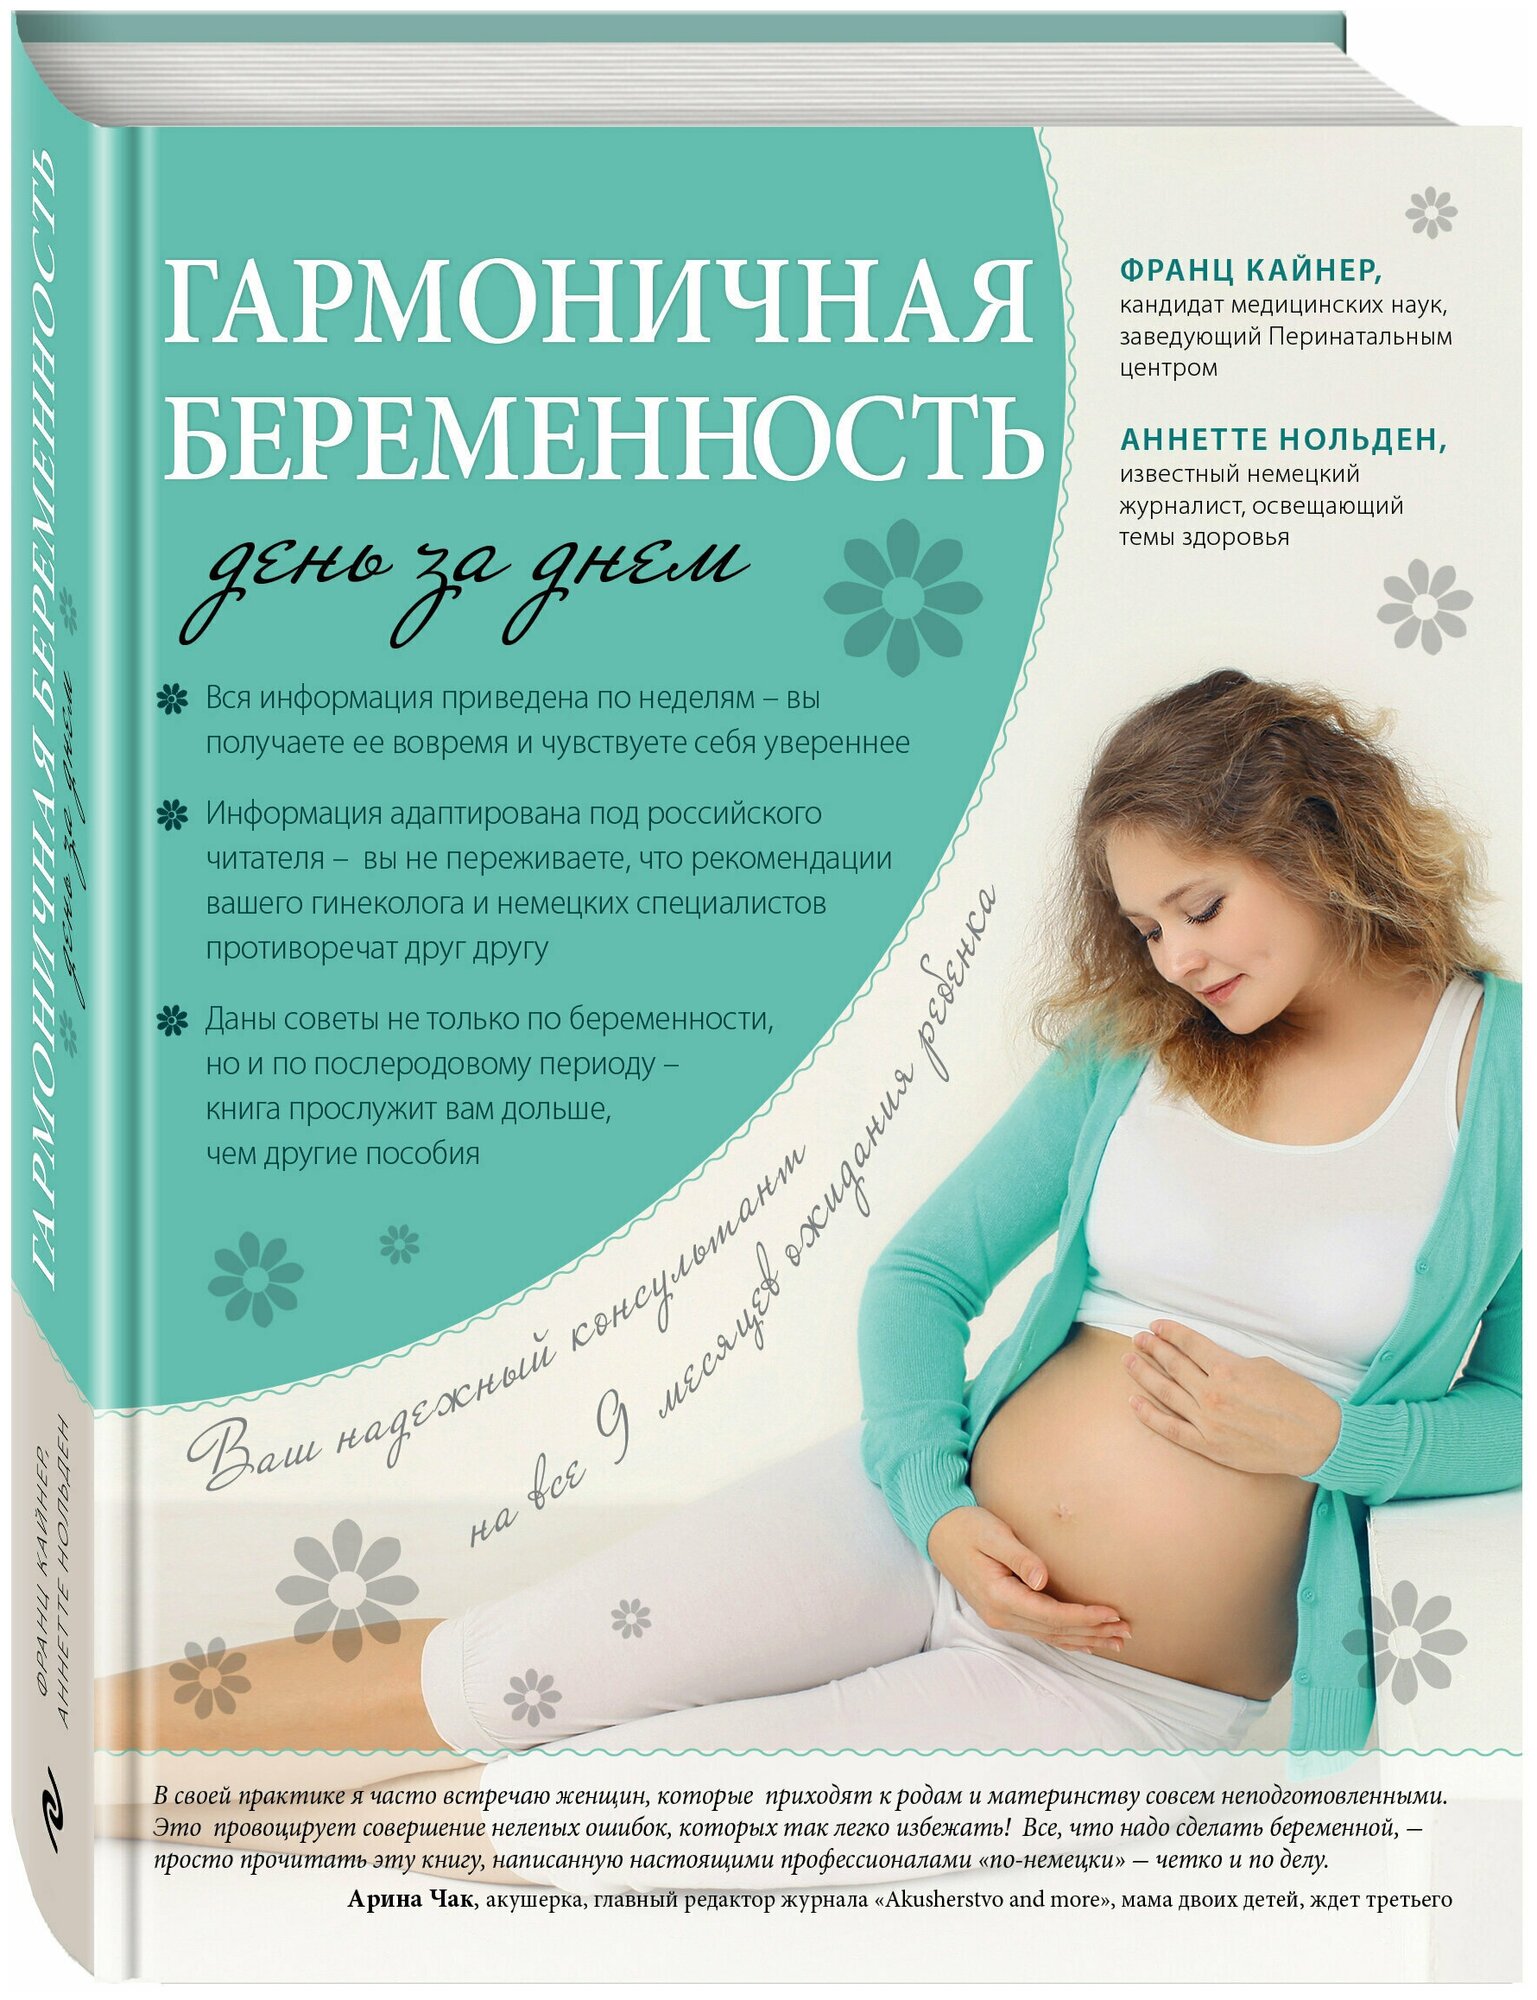 Гармоничная беременность день за днем Книга Кайнер 5-699-82849-4 16+